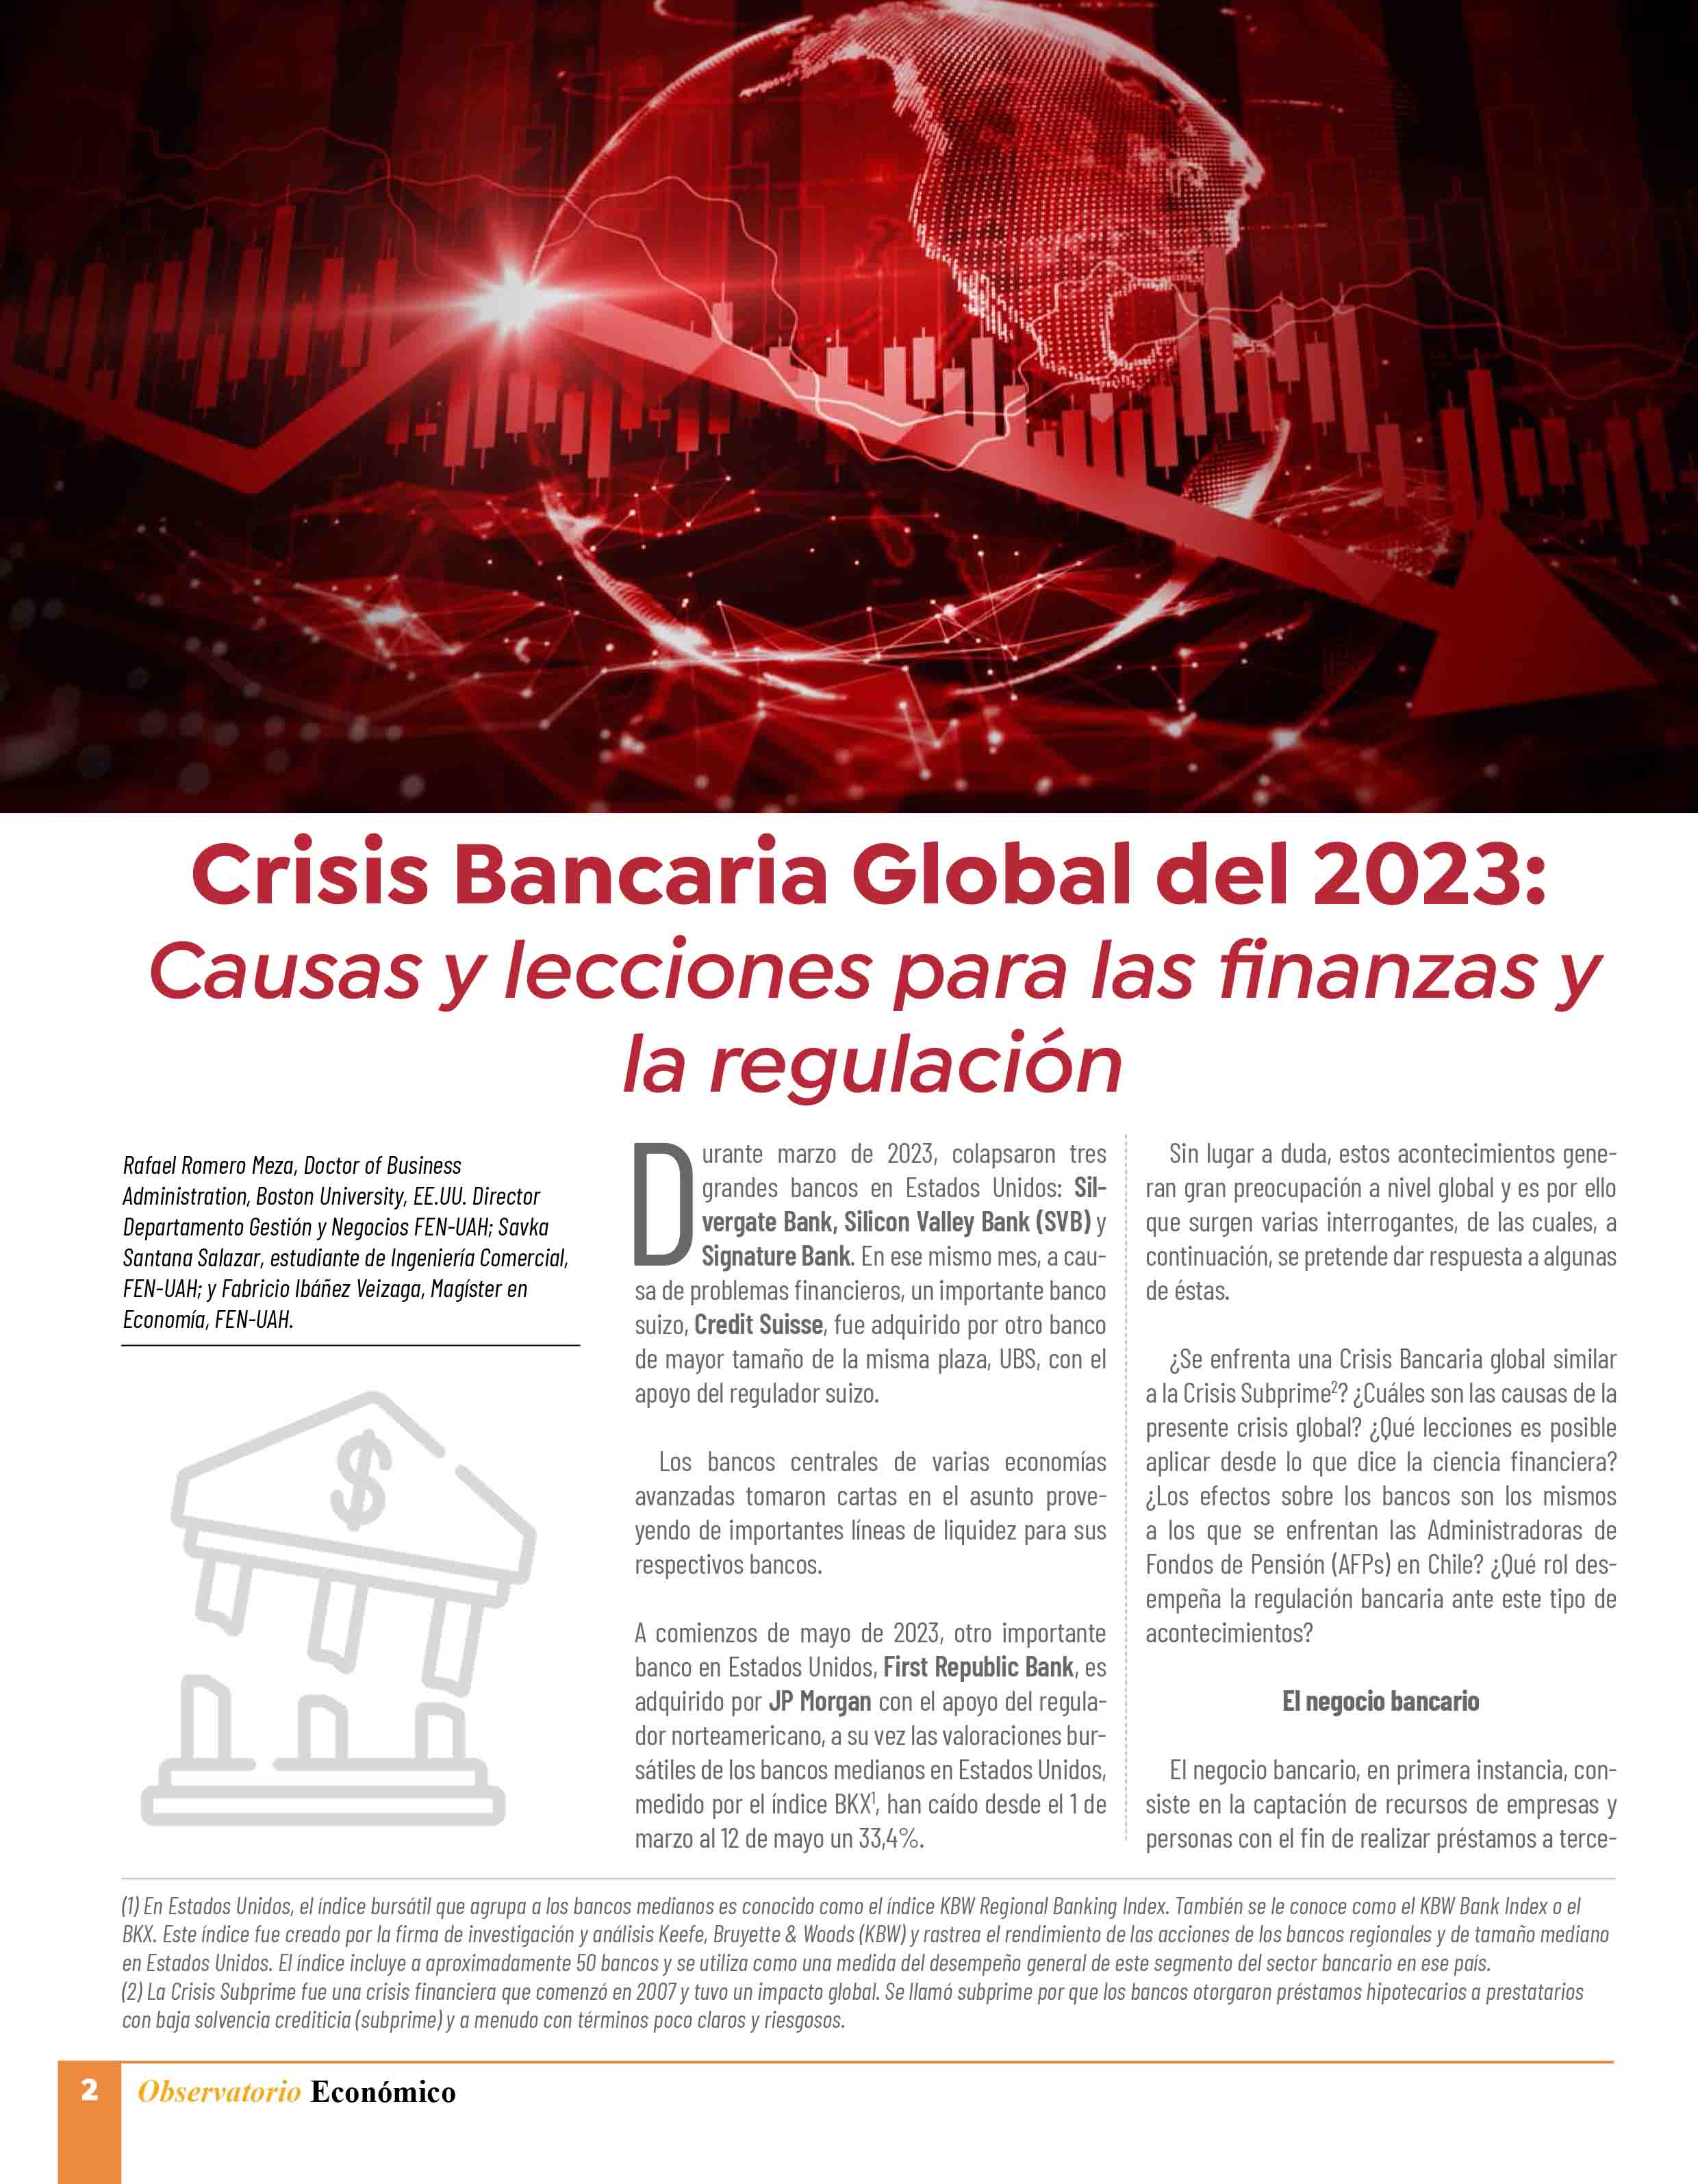 "Crisis Bancaria" artículo publicado por Sr. Rafael Romero, socio PKF Chile.